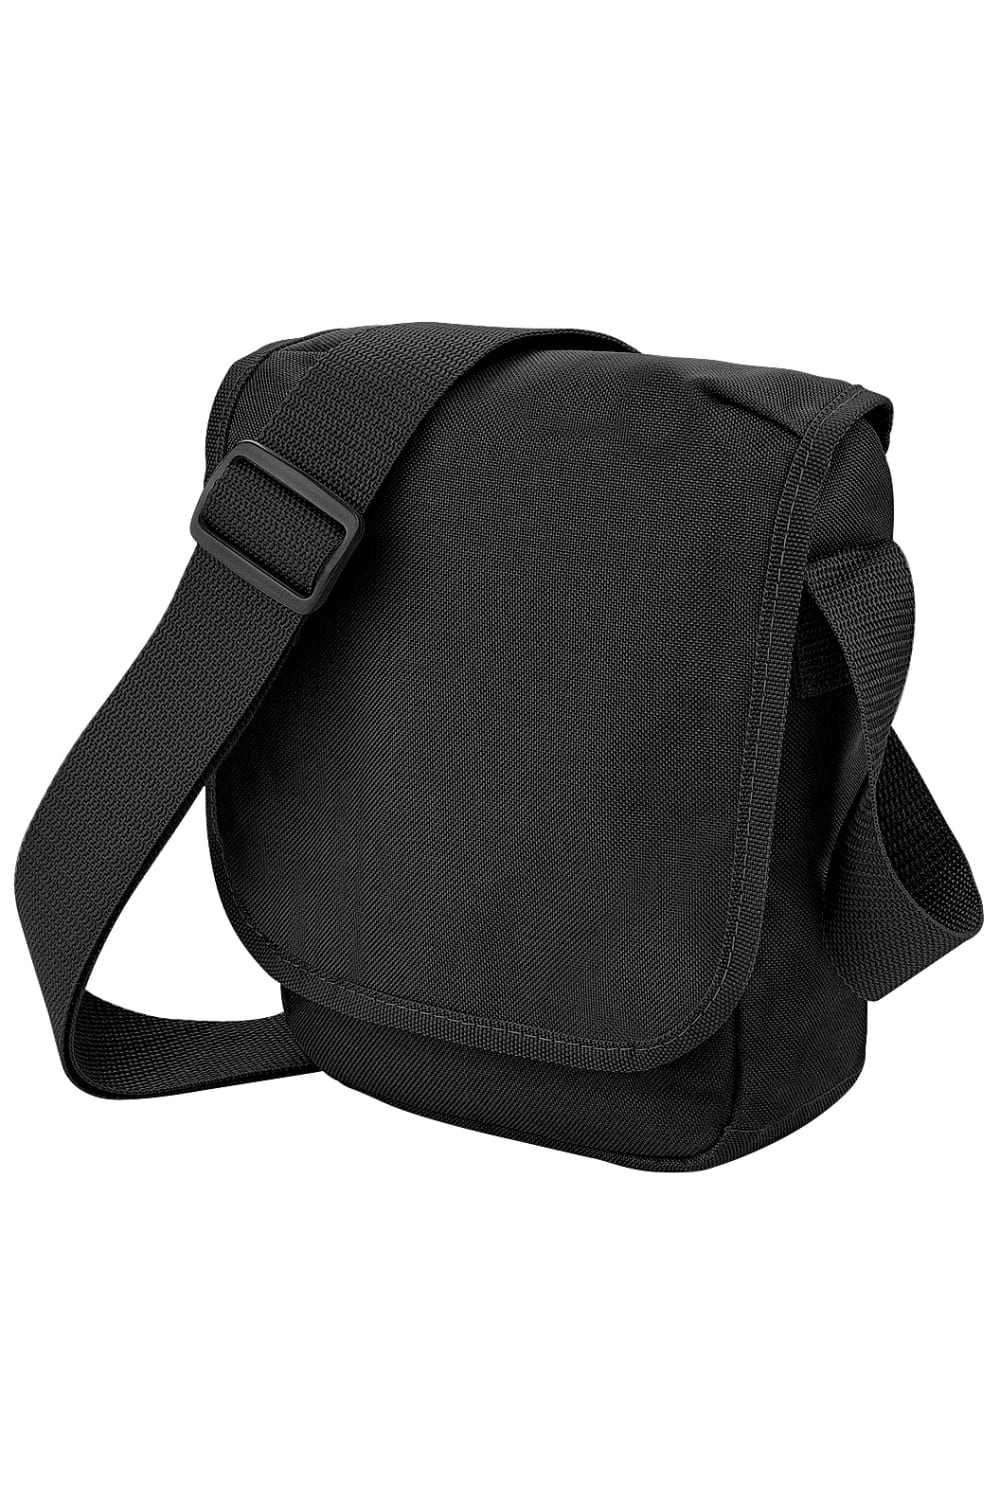 Mini Adjustable Reporter / Messenger Bag 2 Liters Pack Of 2 - Black